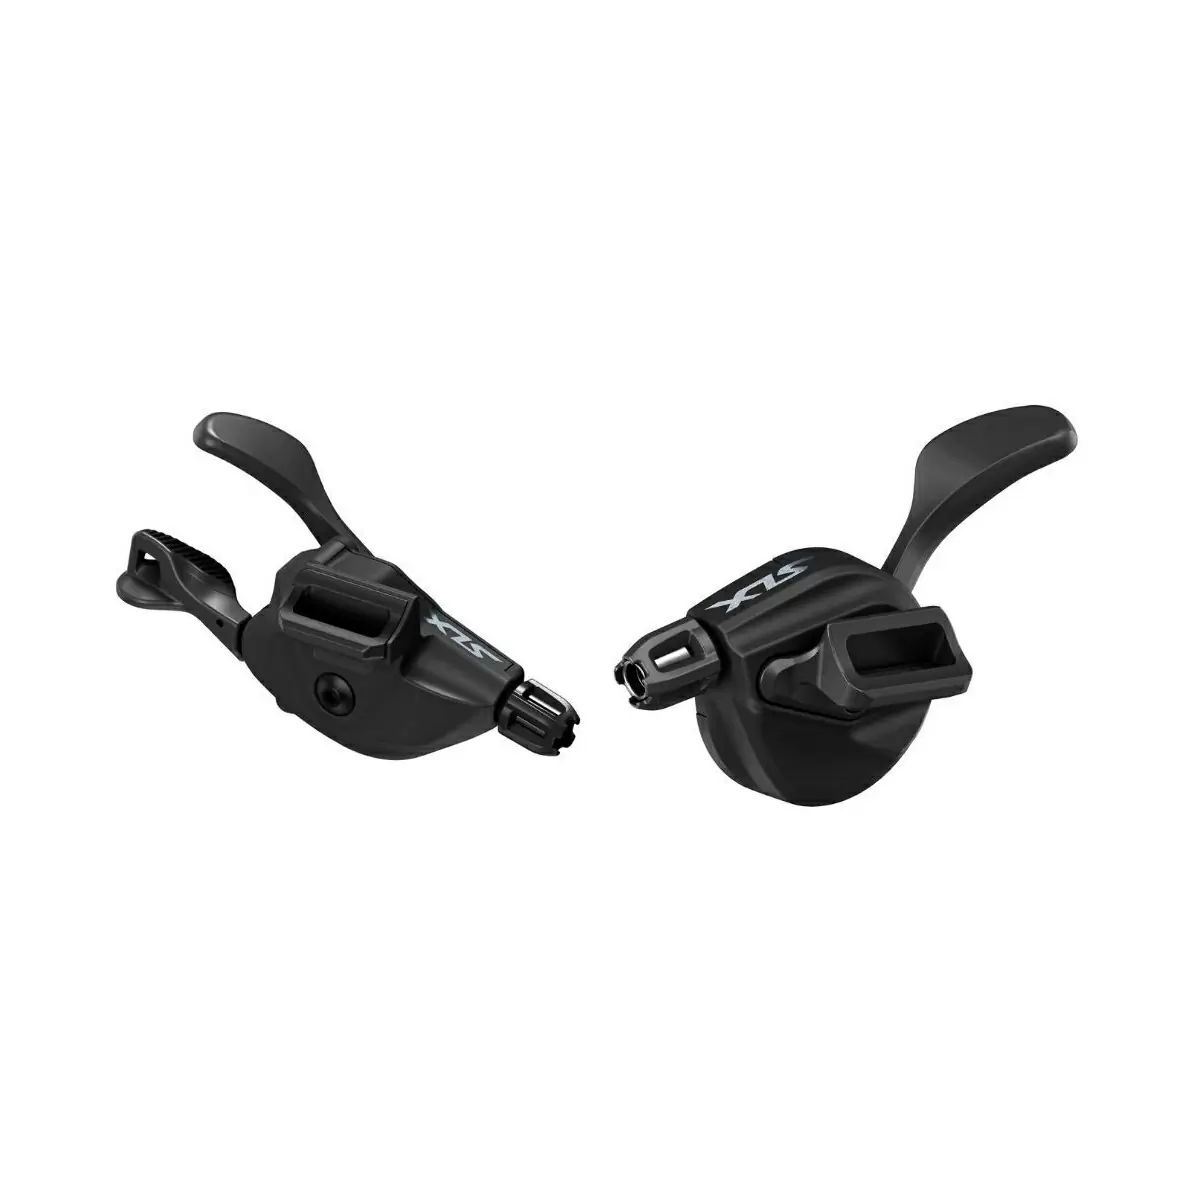 Left/Right Shif Levers SLX SL-M7100-I 2x12s I-Spec EV Black - image